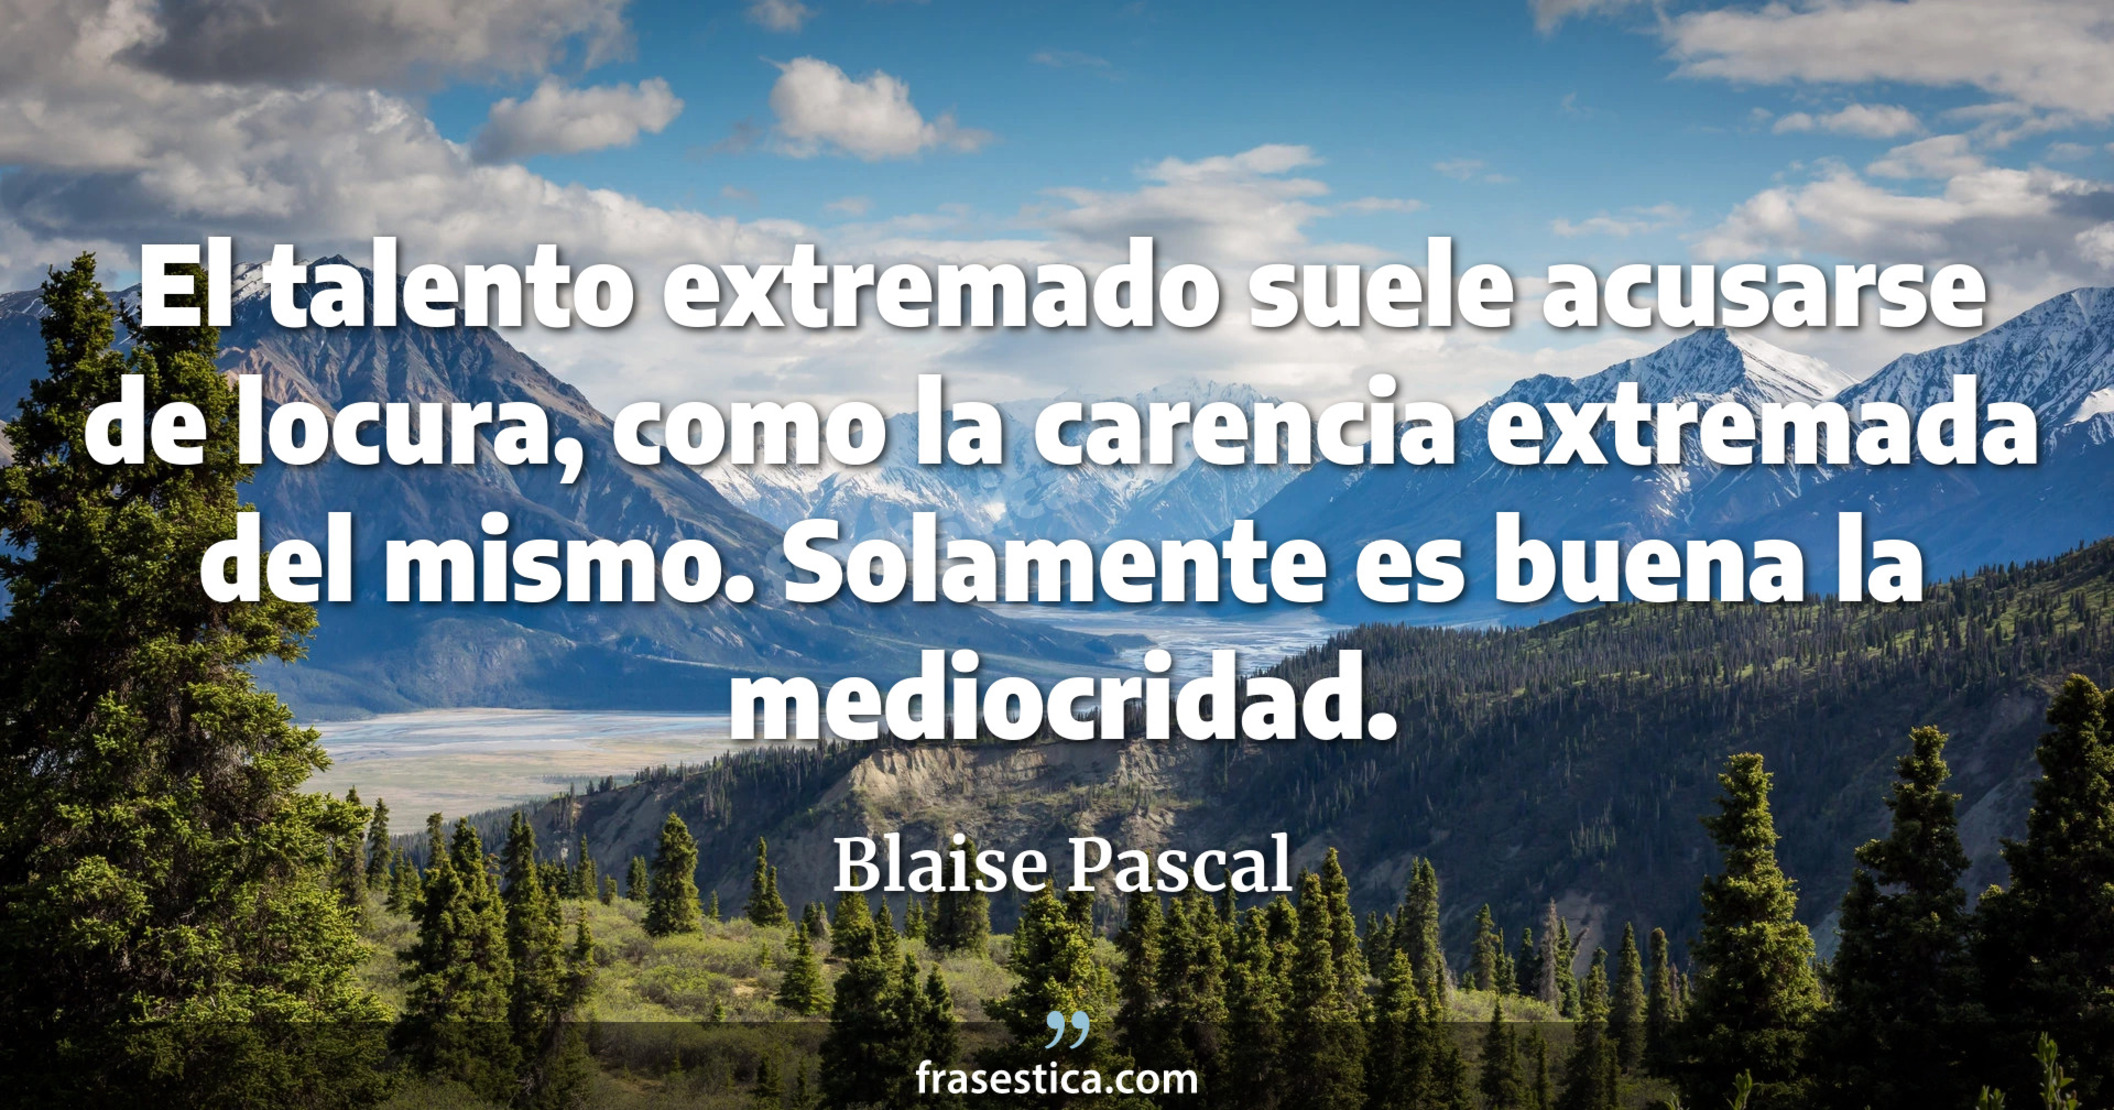 El talento extremado suele acusarse de locura, como la carencia extremada del mismo. Solamente es buena la mediocridad. - Blaise Pascal